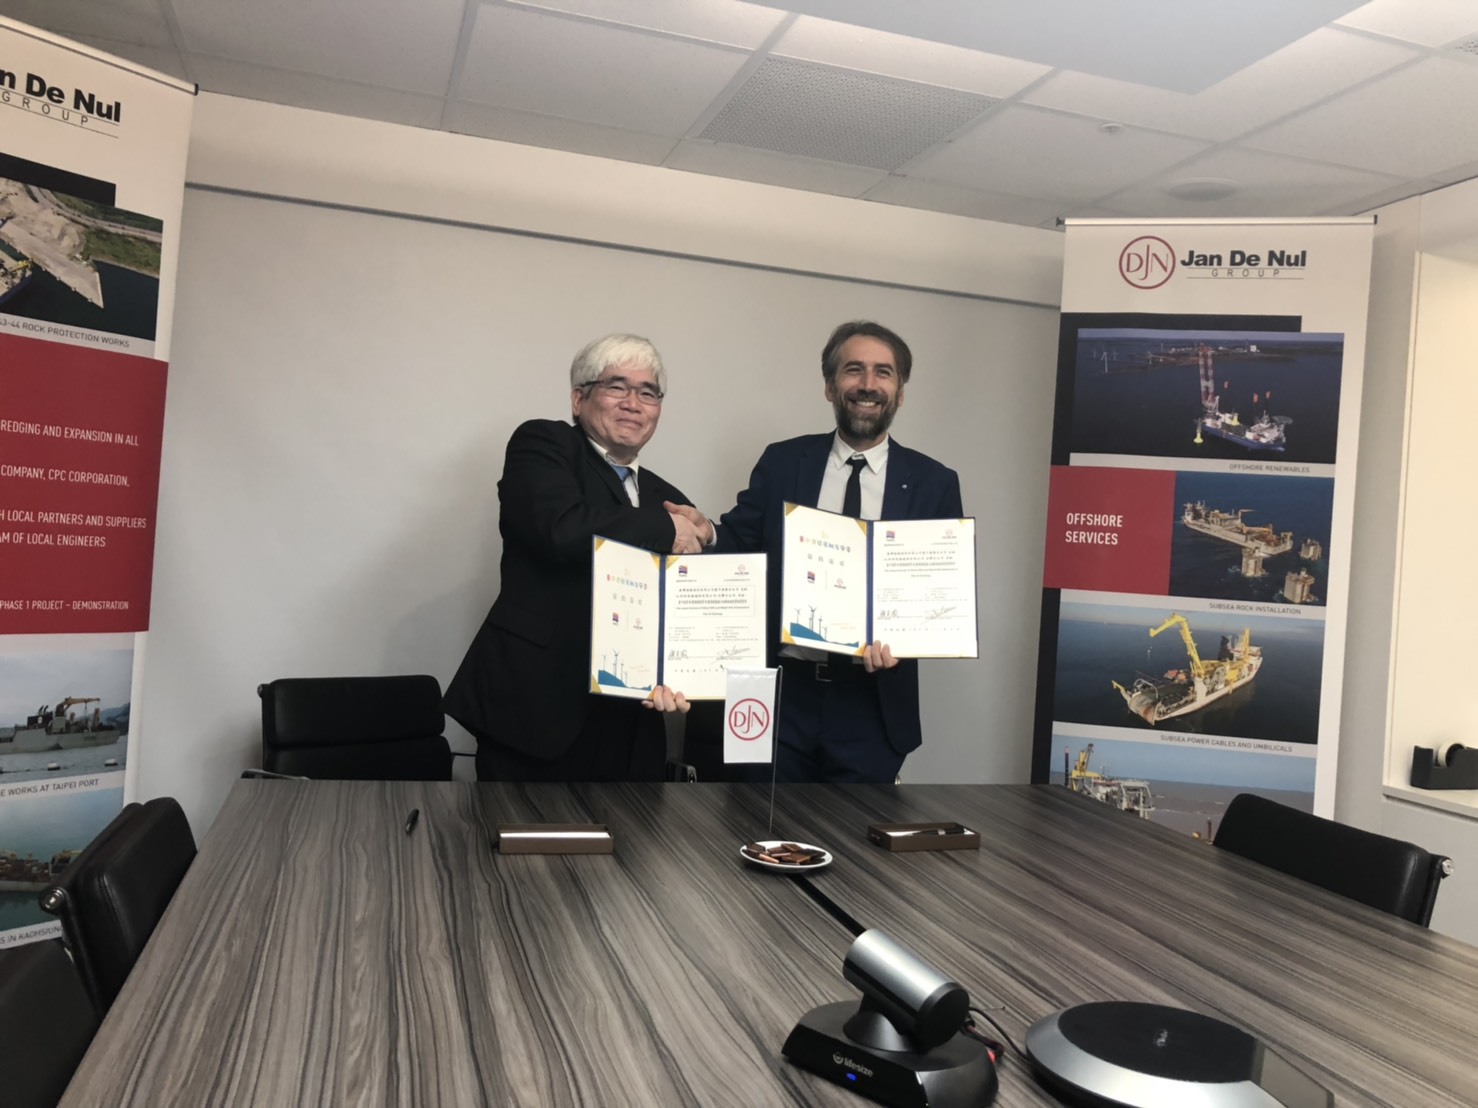 港務公司與楊德諾簽署離岸風電水下基礎碼頭合約